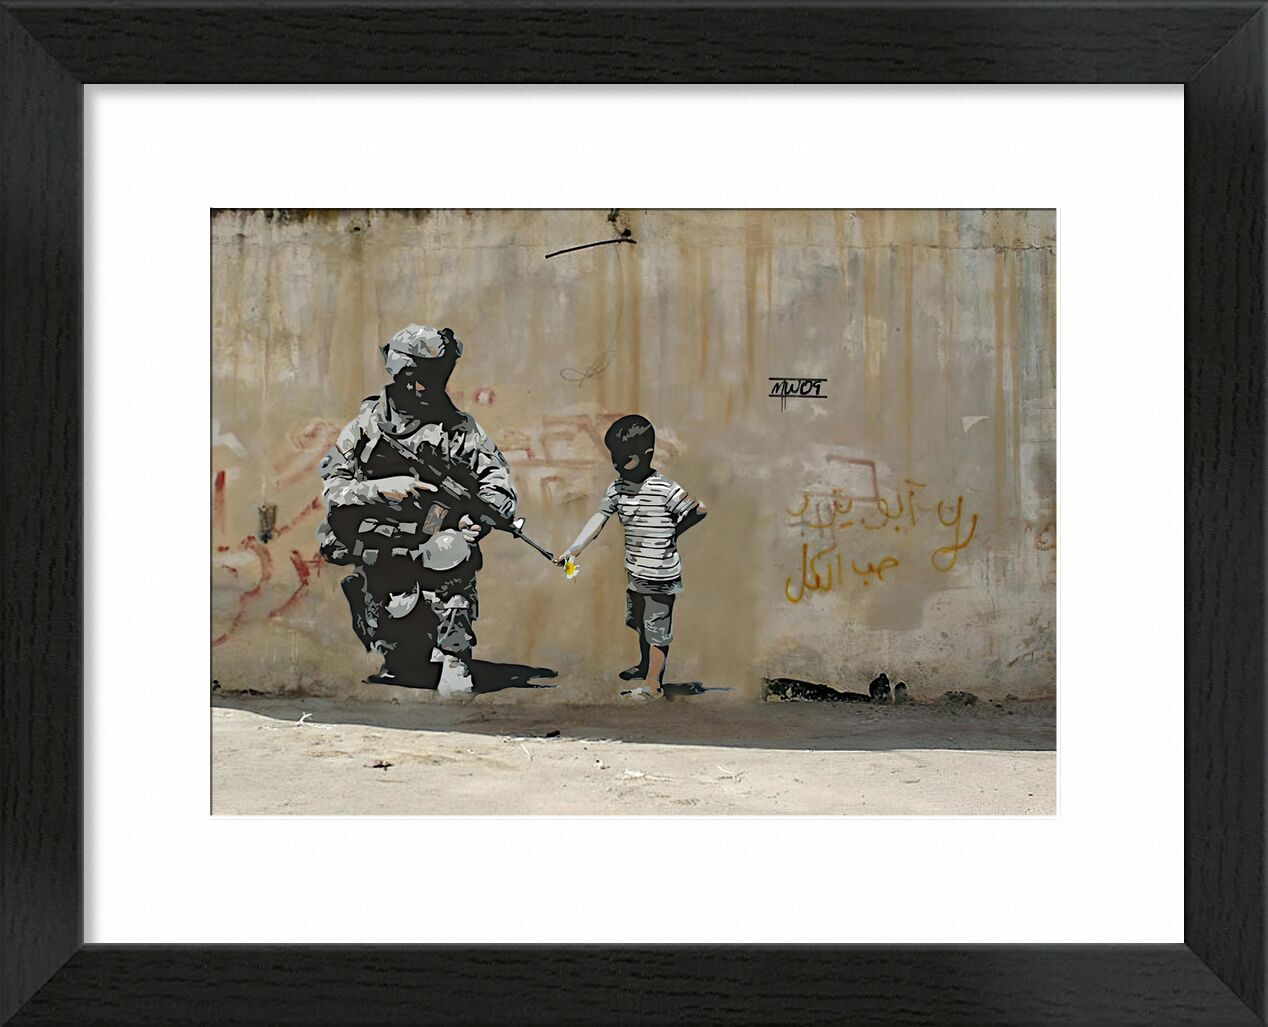 Peace - BANKSY desde Bellas artes, Prodi Art, Palestina, arte callejero, niño, niño, guerra, paz, BANSKY